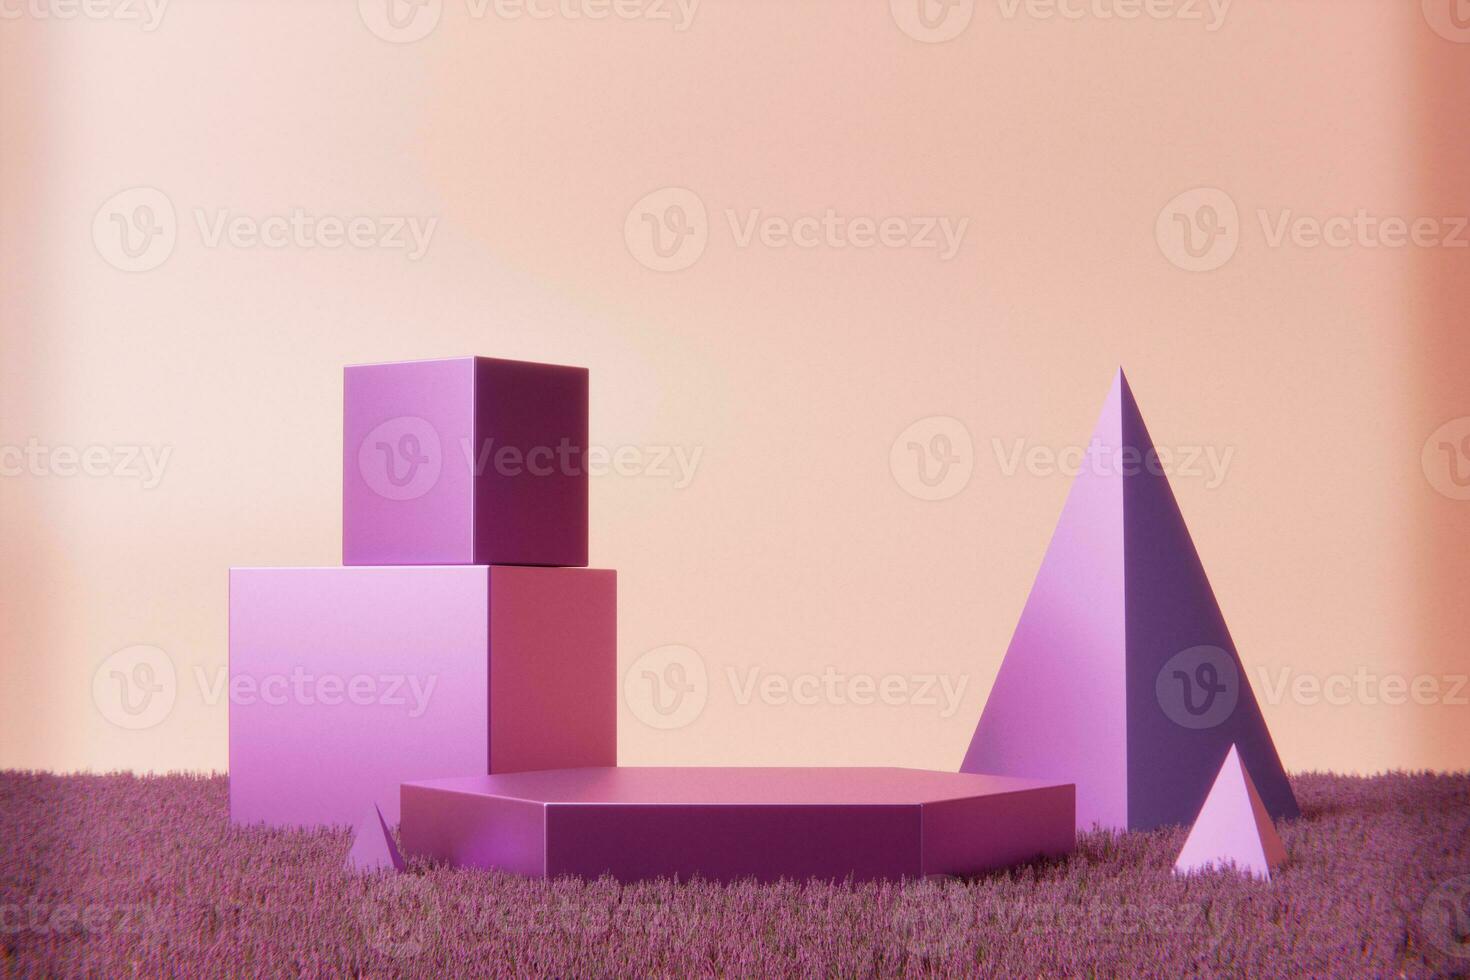 staan met meerdere metalen roze meetkundig figuren foto